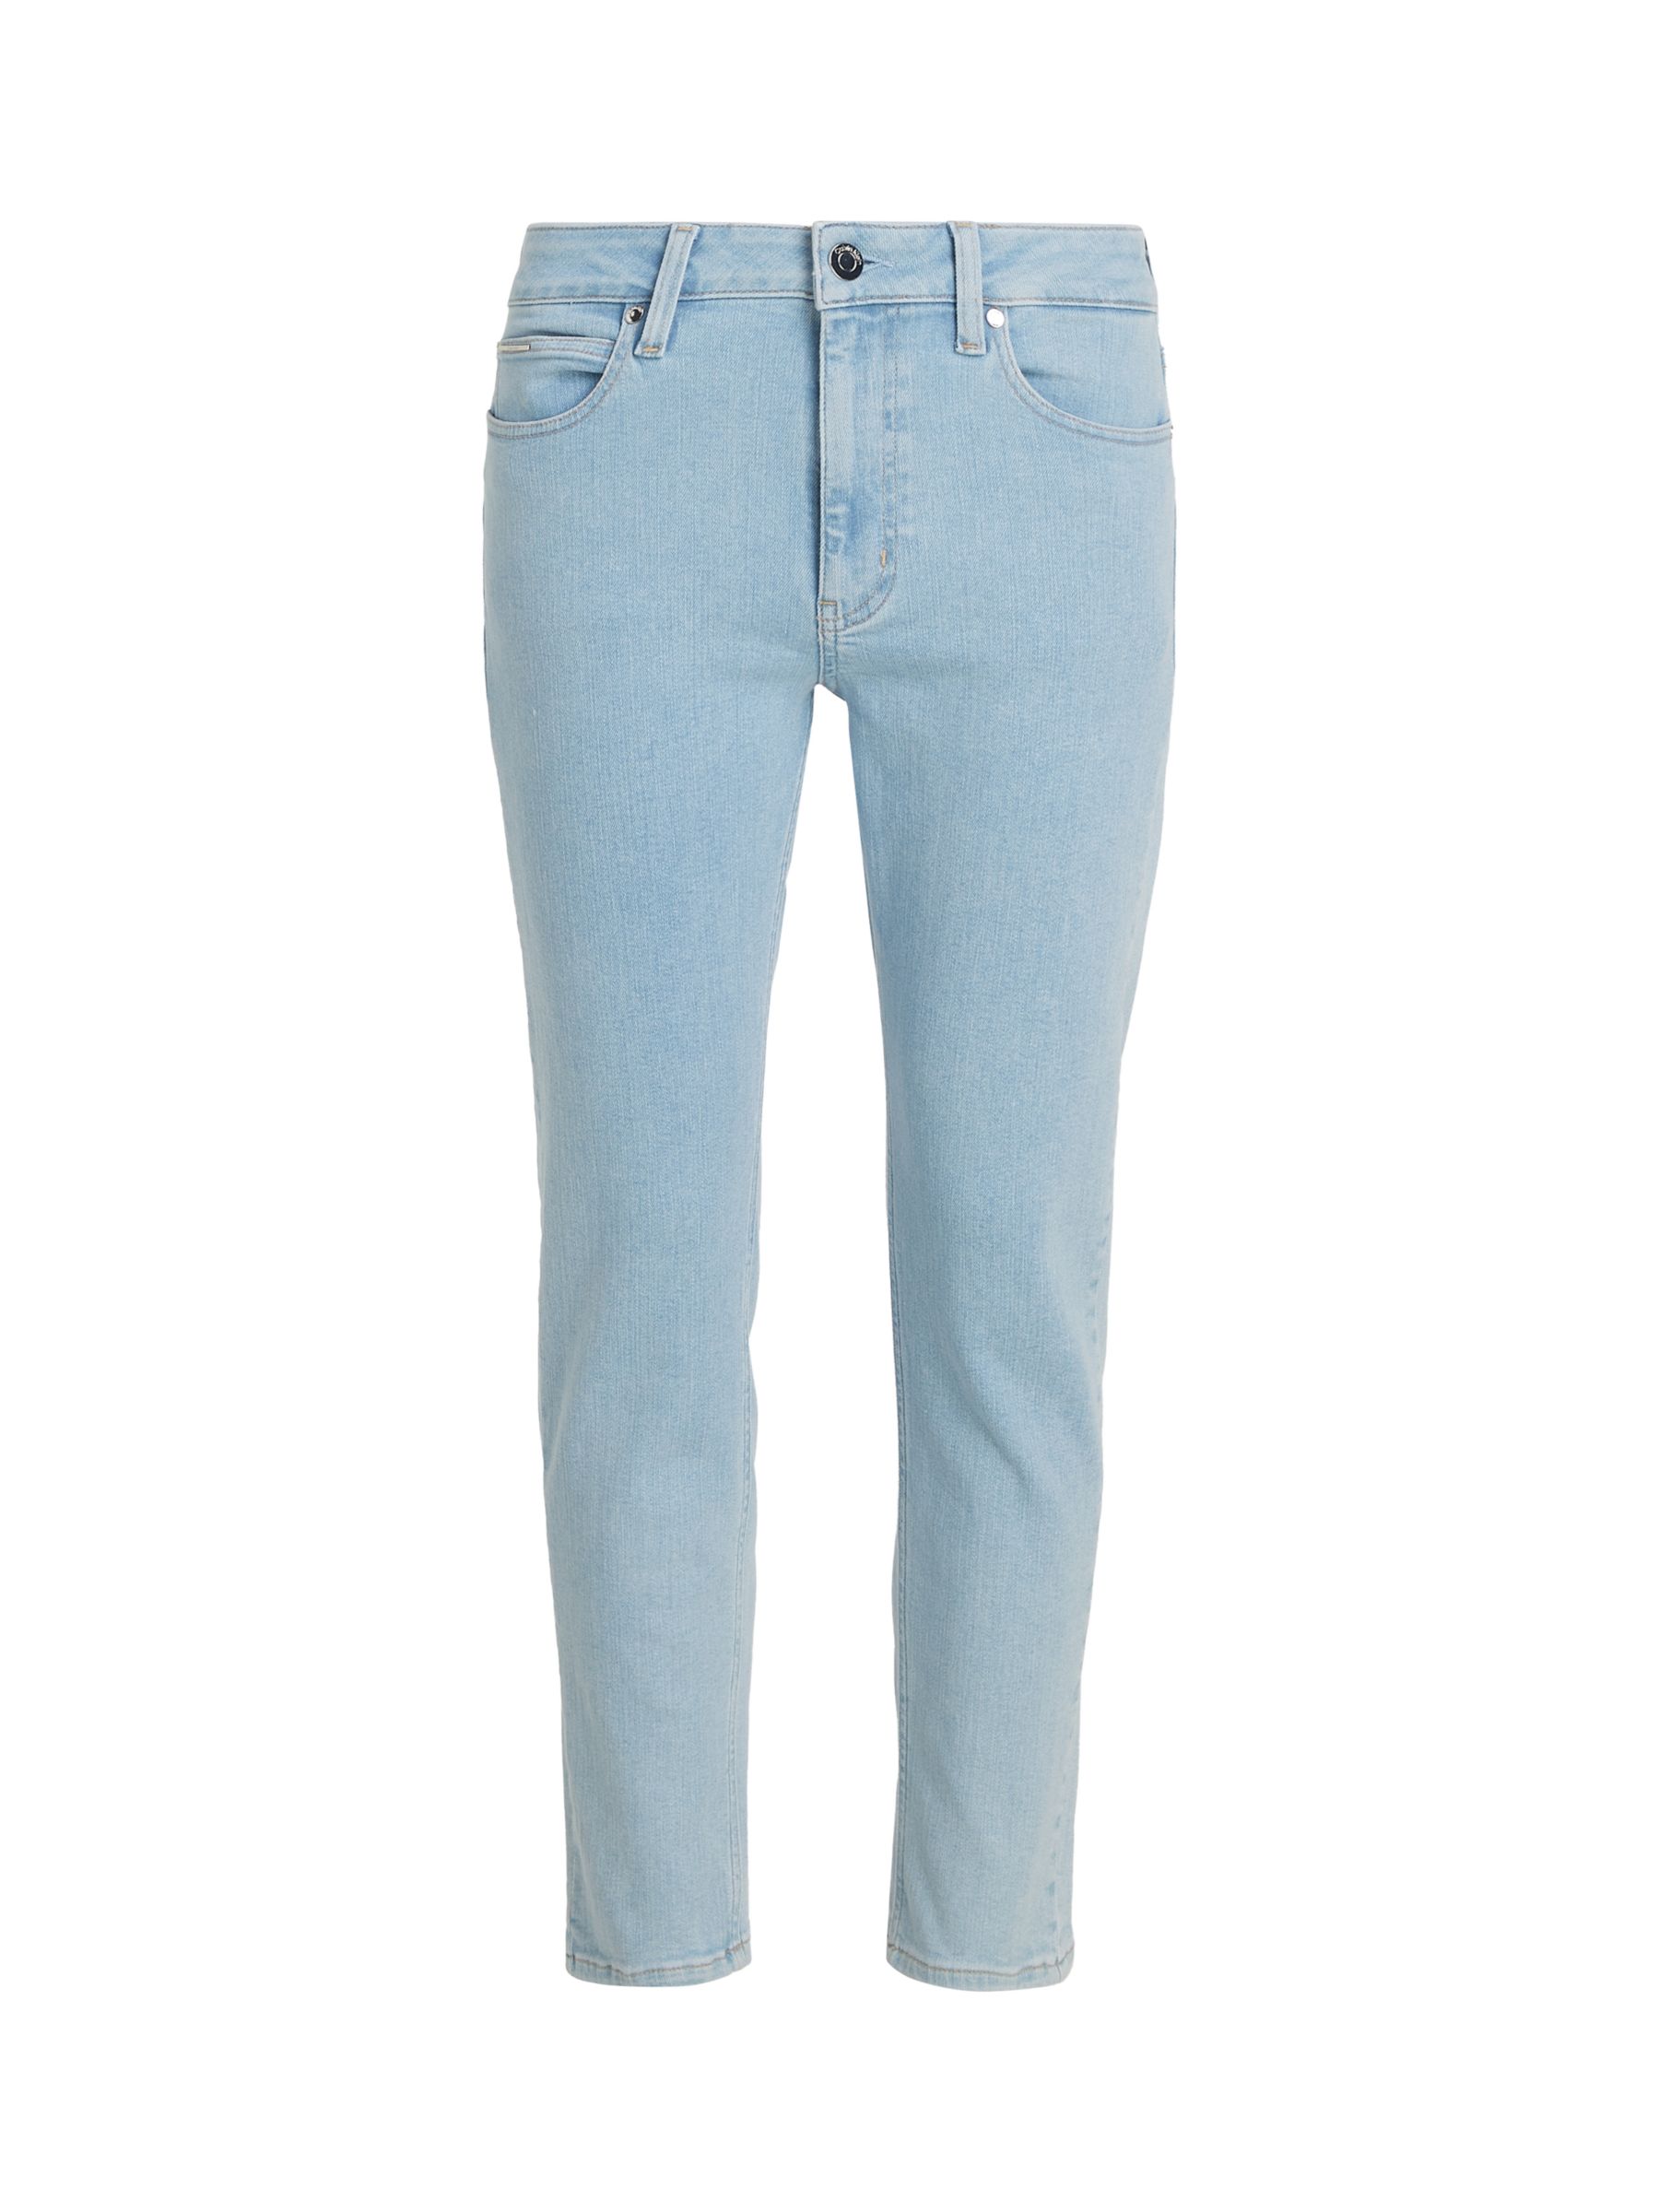 Calvin Klein Mid Rise Slim Leg Ankle Jeans, Light Blue, 25